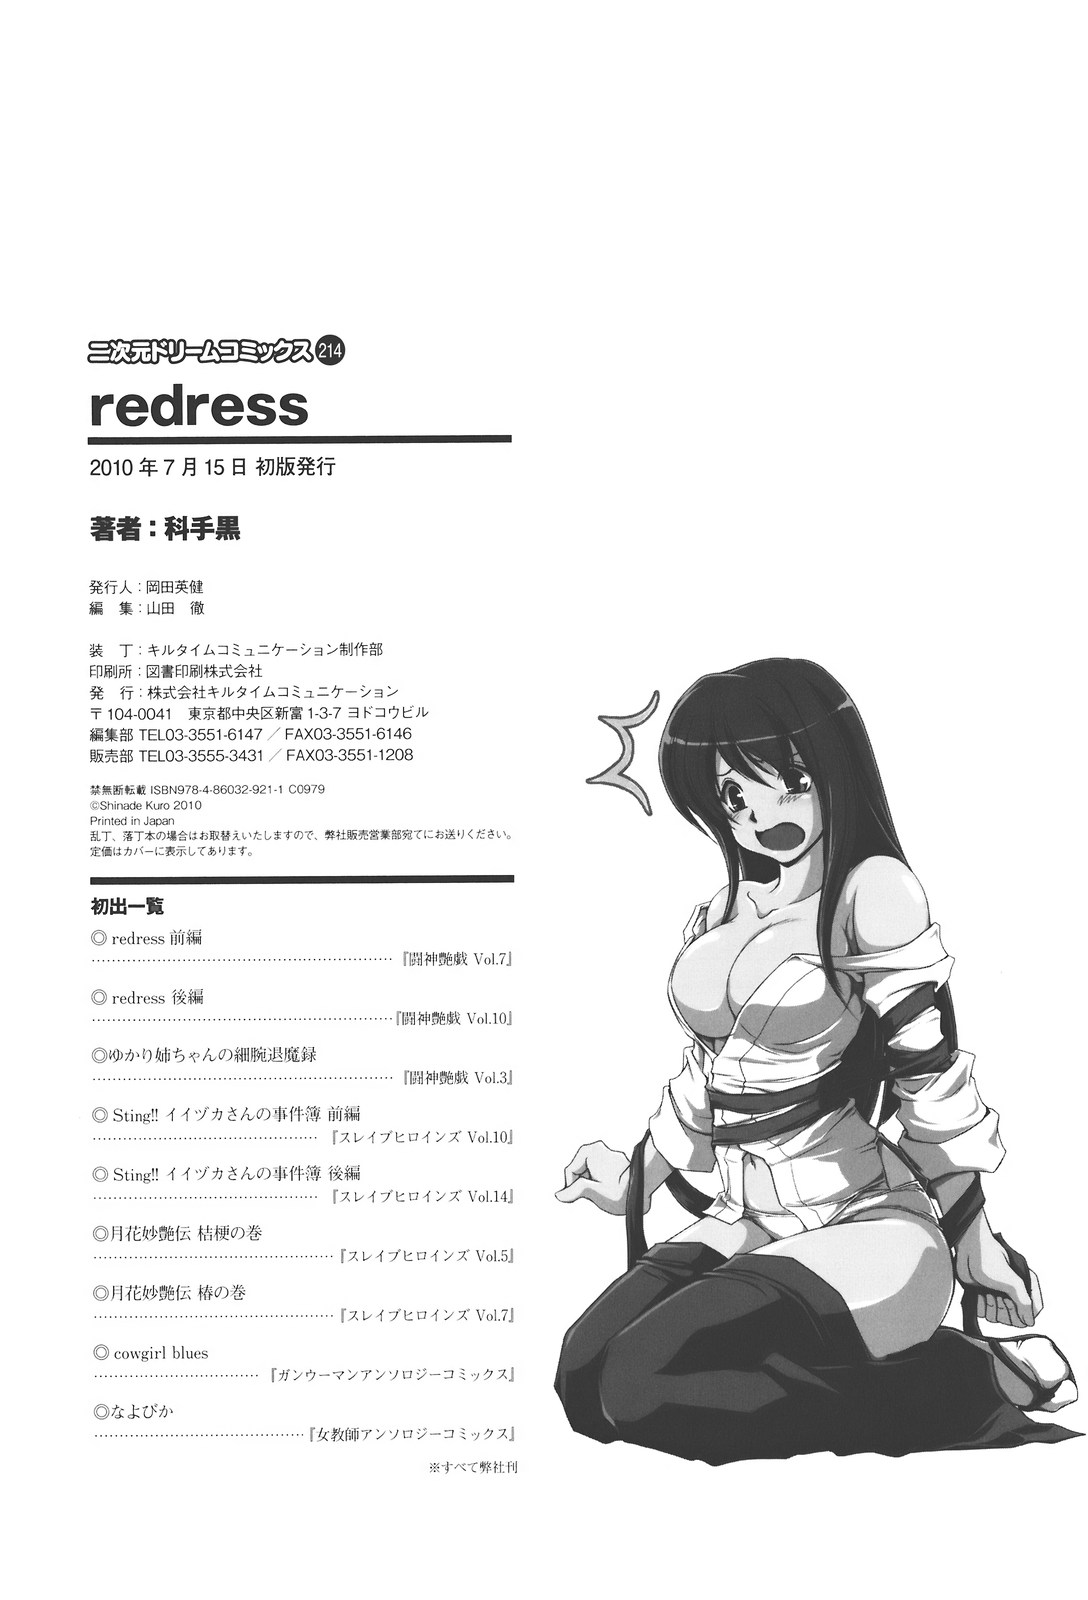 [Shinade Kuro] redress [科手黒] redress レッドレス [10-07-15]